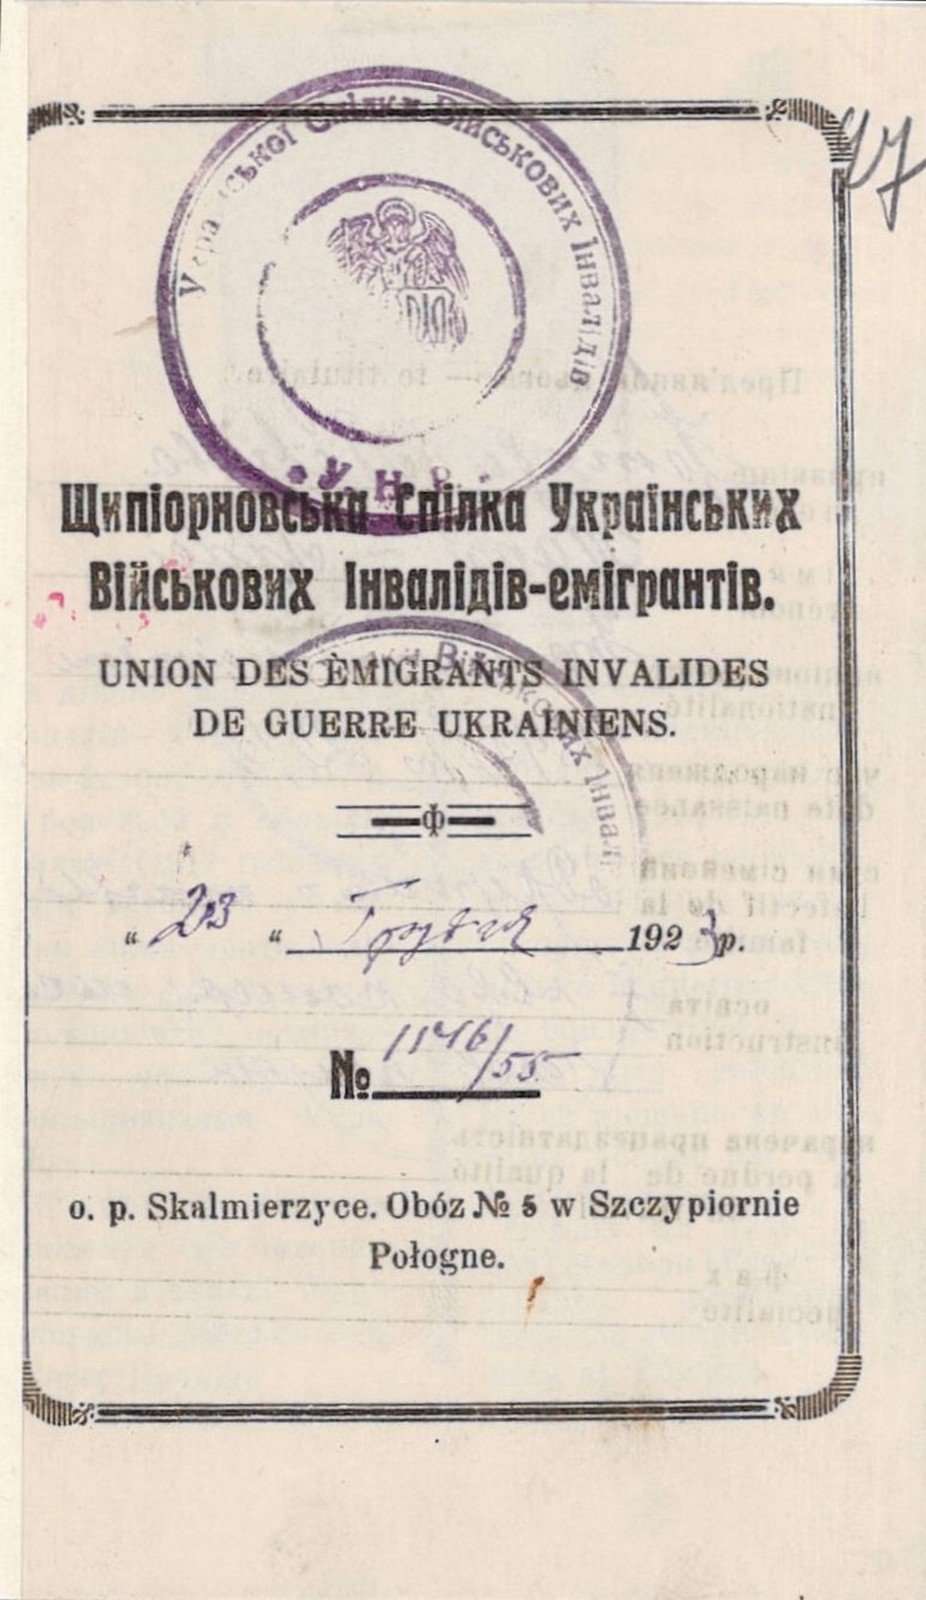 Посвідчення військового інваліда Т. Нетреби, видане Спілкою військових інвалідів у таборі Щипйорно. 23 грудня 1923 р.